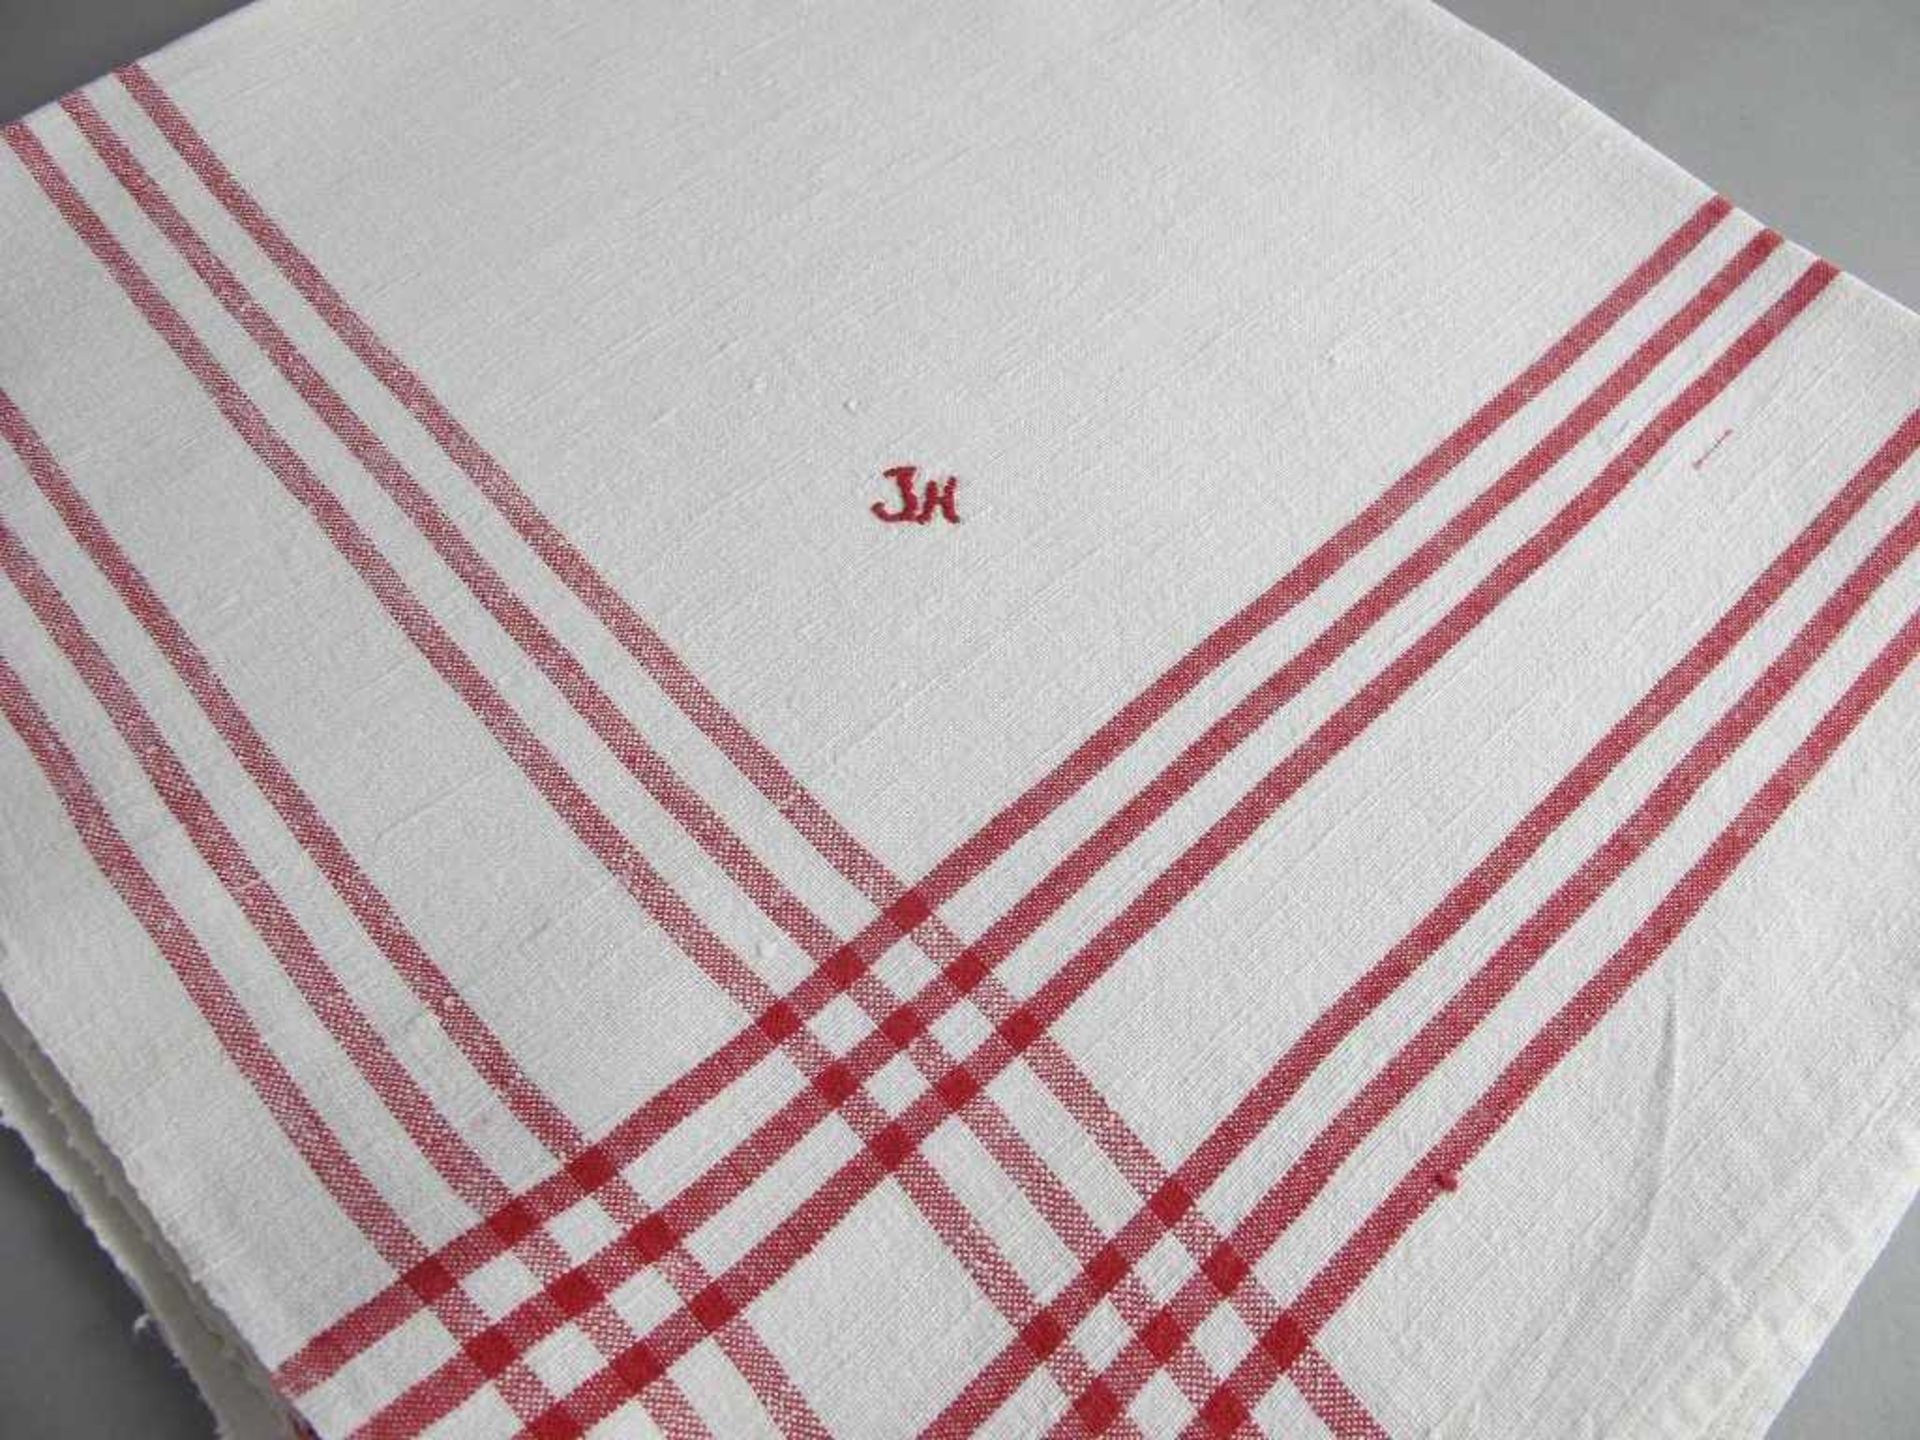 Fünf Geschirrhandtücher mit Monogramm "JH".